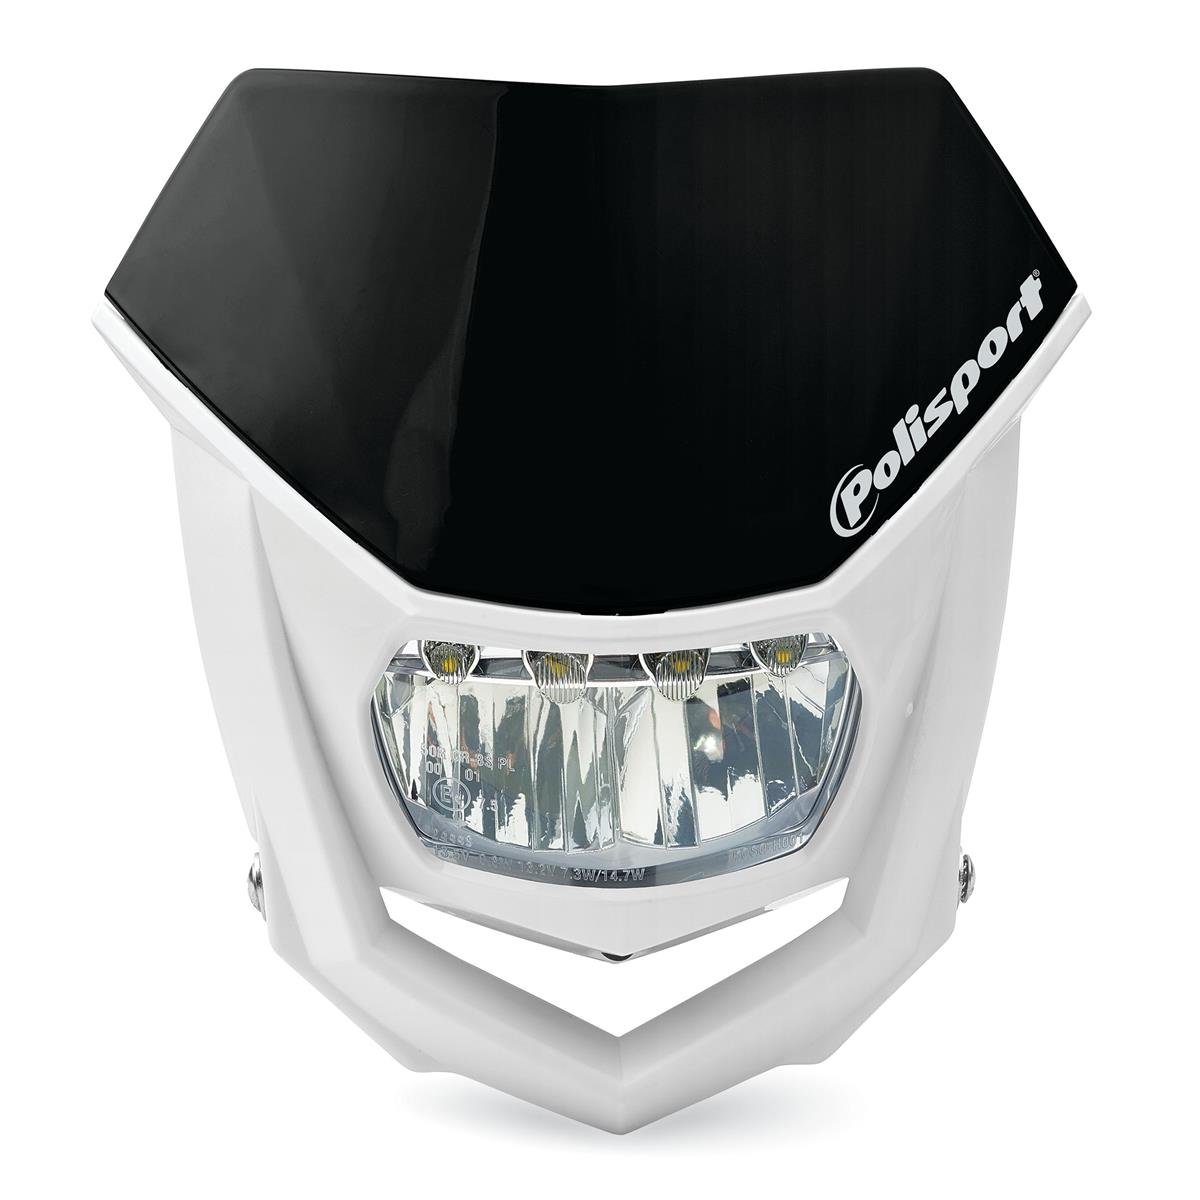 Polisport Headlight Mask Halo Led Black/White